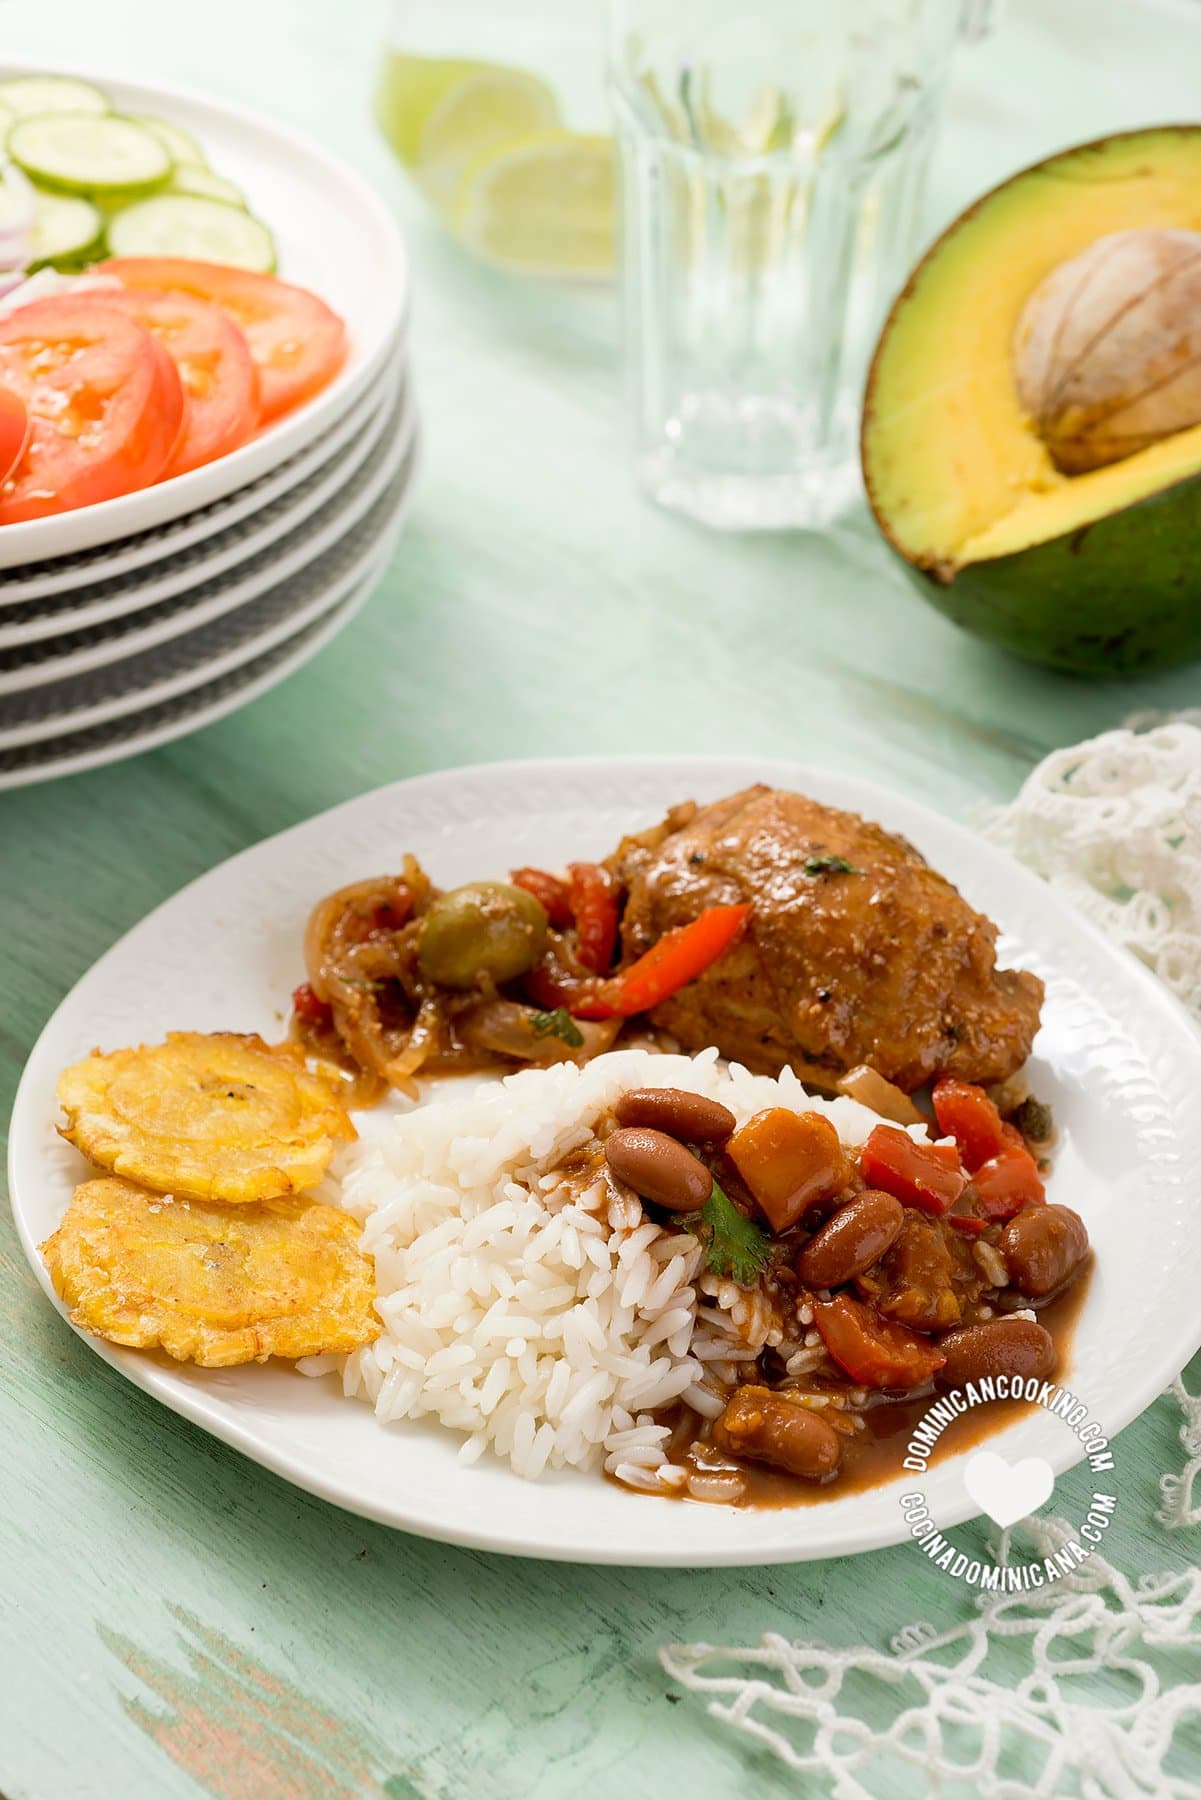 Comida tradicional dominicana: arroz, habichuelas, carne, aguacate y ensalada